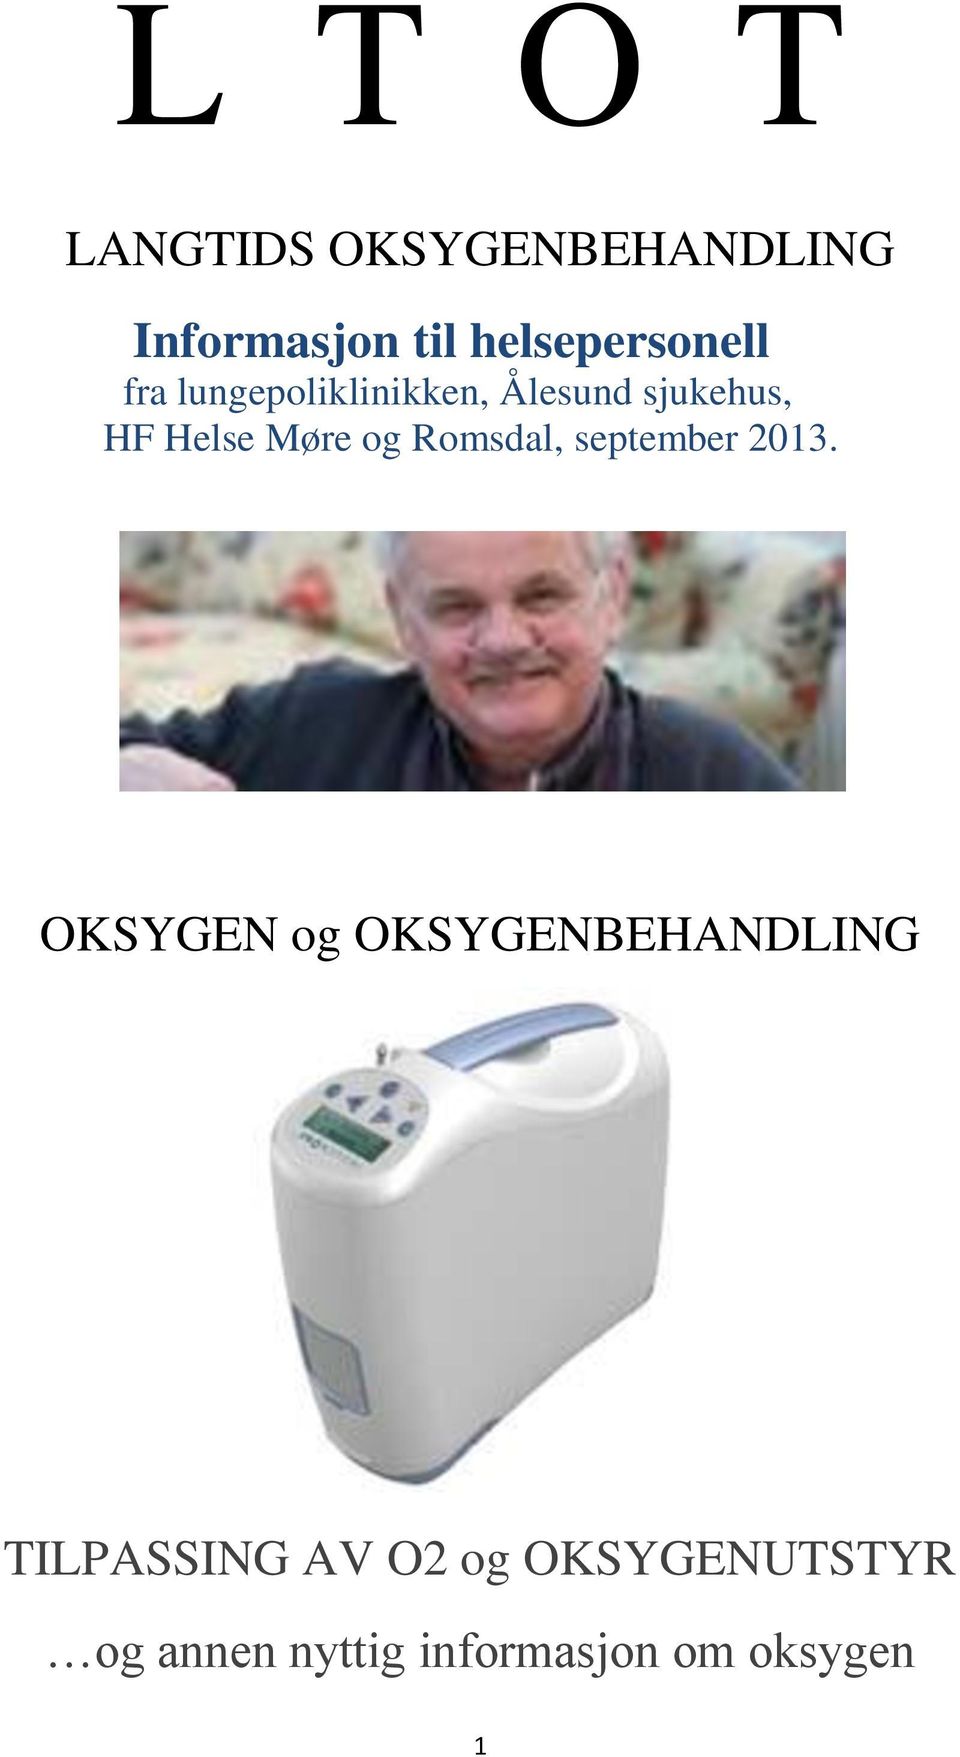 Helse Møre og Romsdal, september 2013.